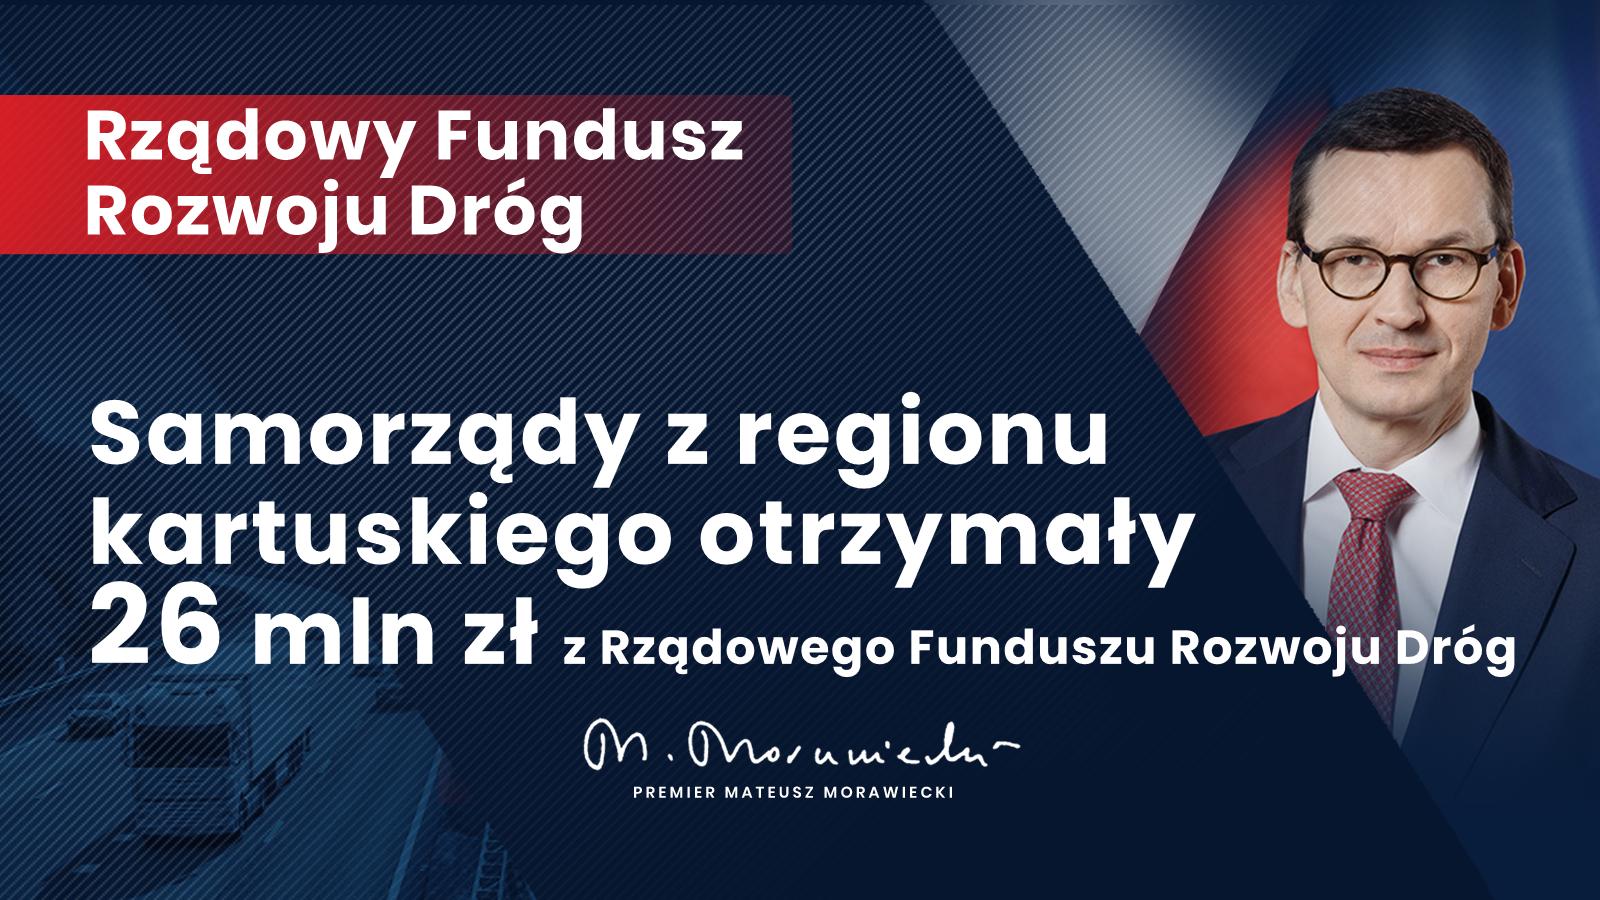 Rządowy Fundusz Rozwoju Dróg dla regionu kartuskiego – 26 mln złotych!